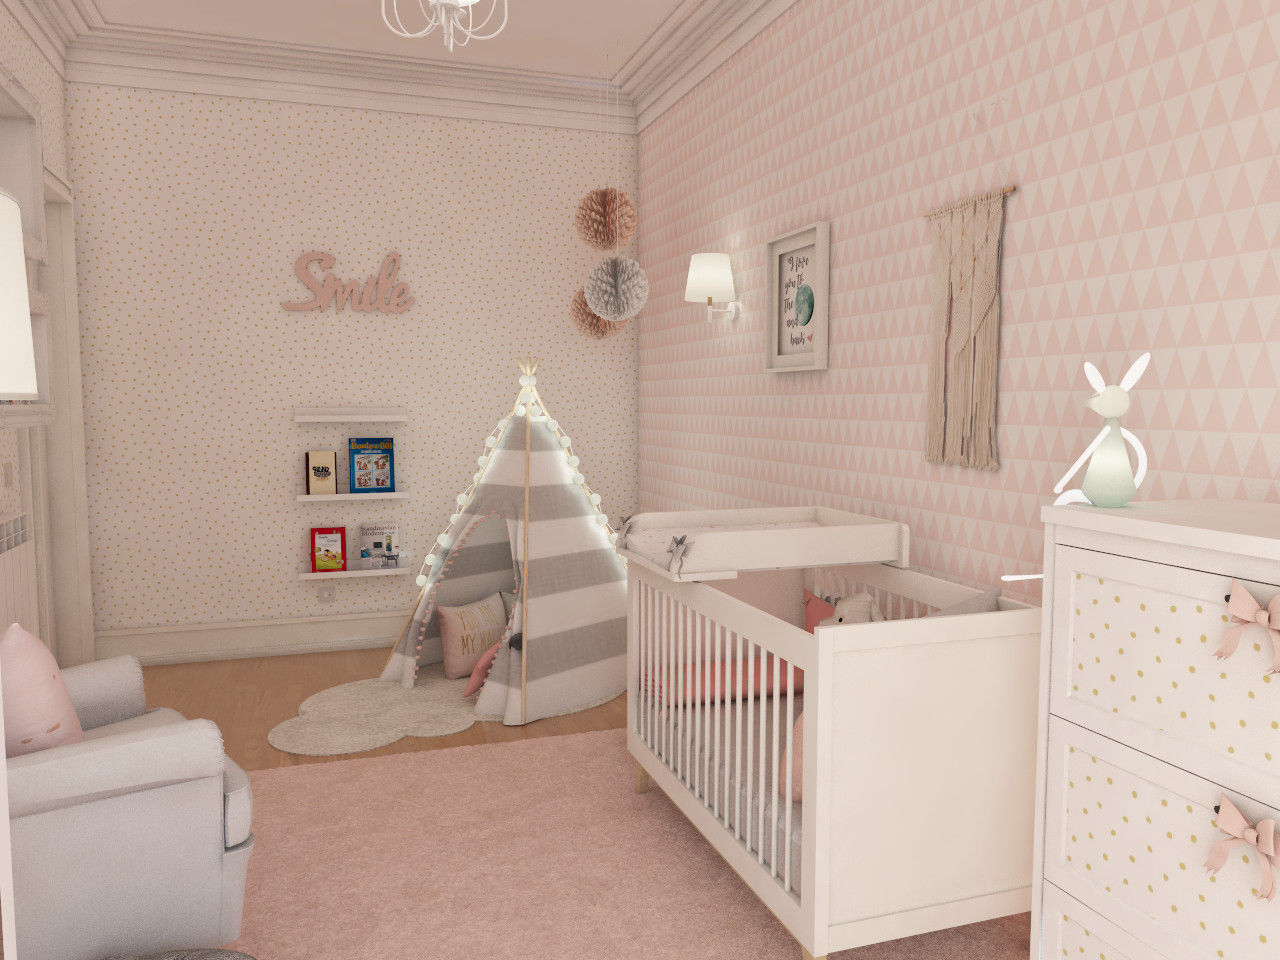 Projeto tranquilo de decoração de quarto de bebé , The Spacealist - Arquitectura e Interiores The Spacealist - Arquitectura e Interiores Phòng chăm bé